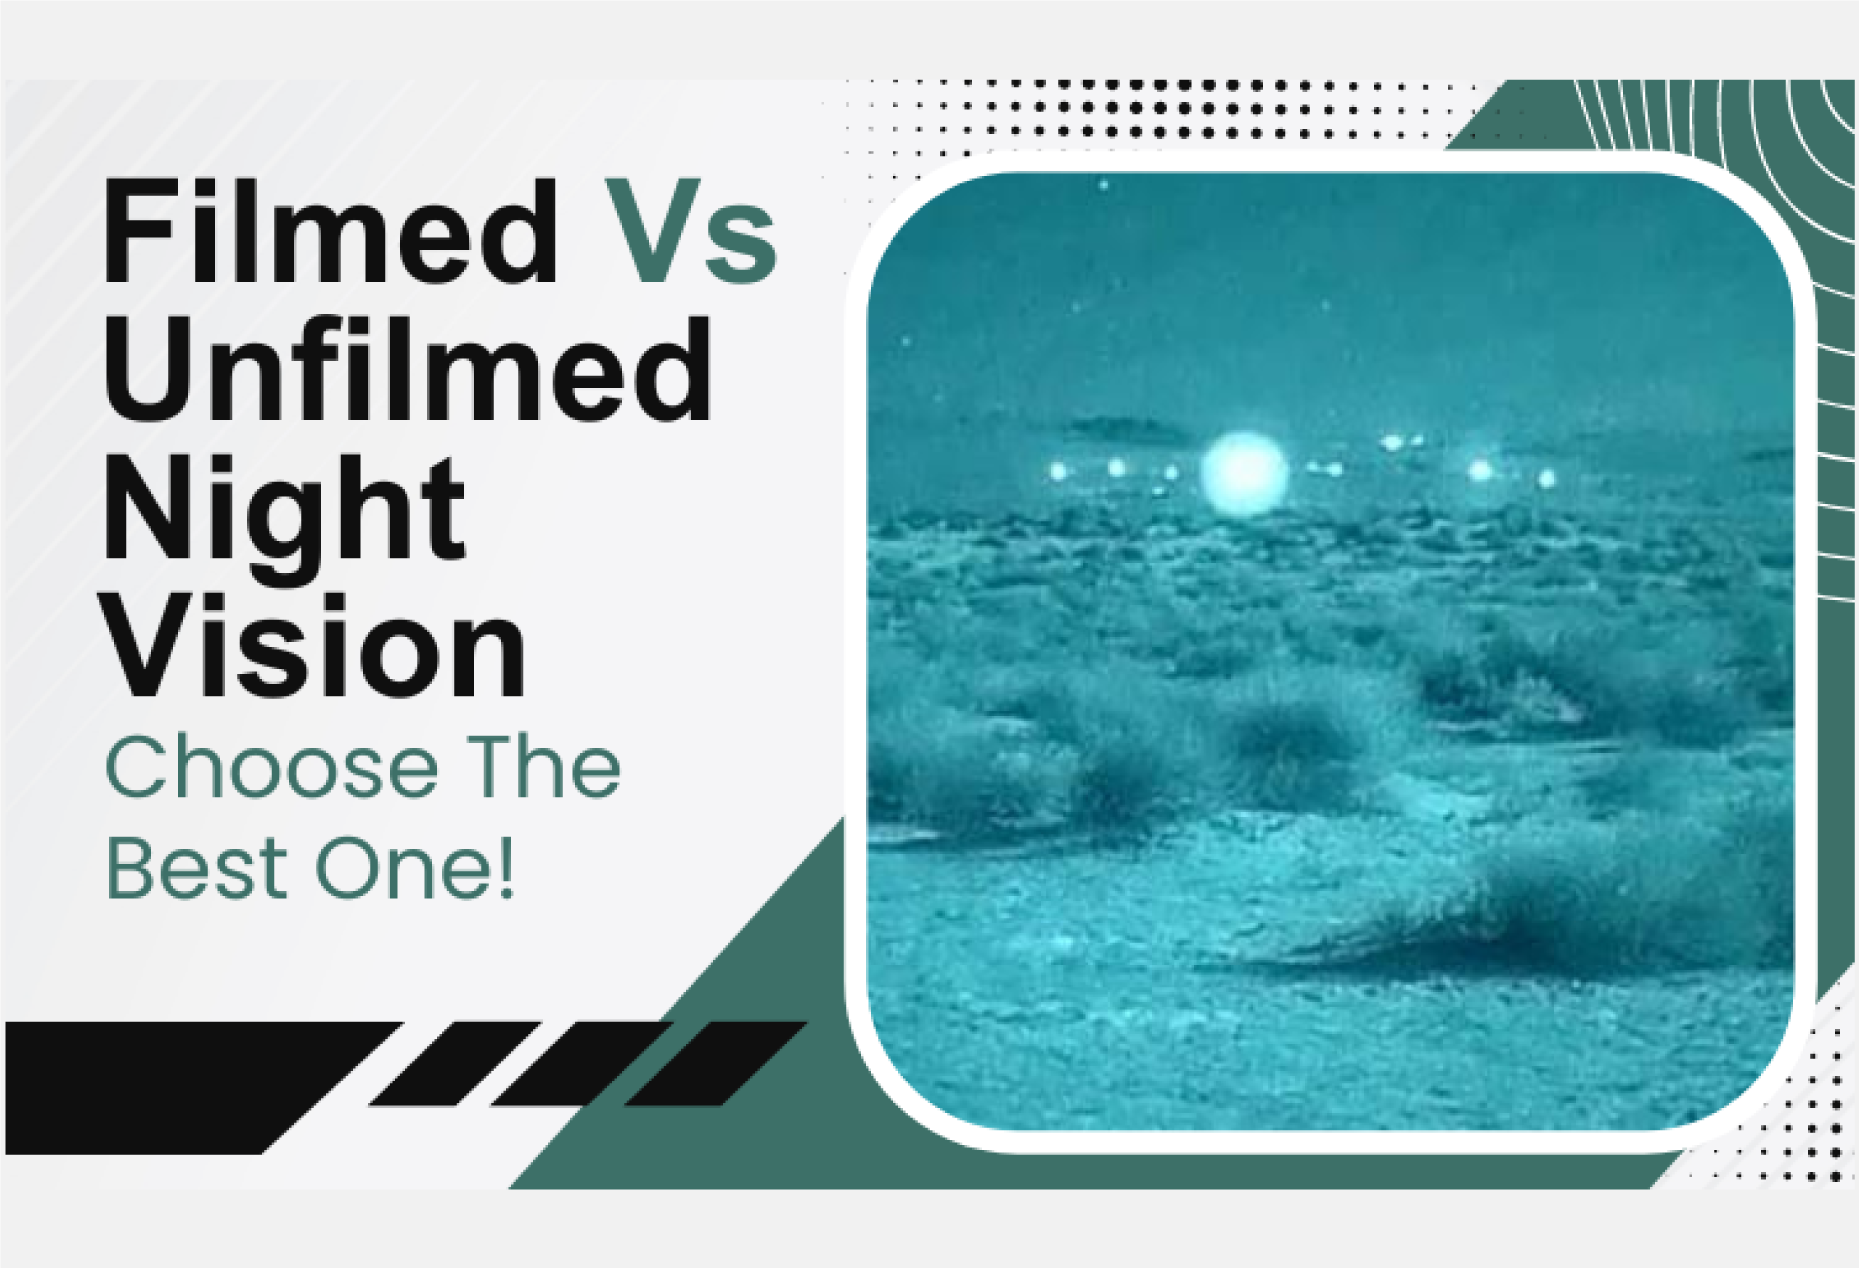 filmed vs unfilmed night vision